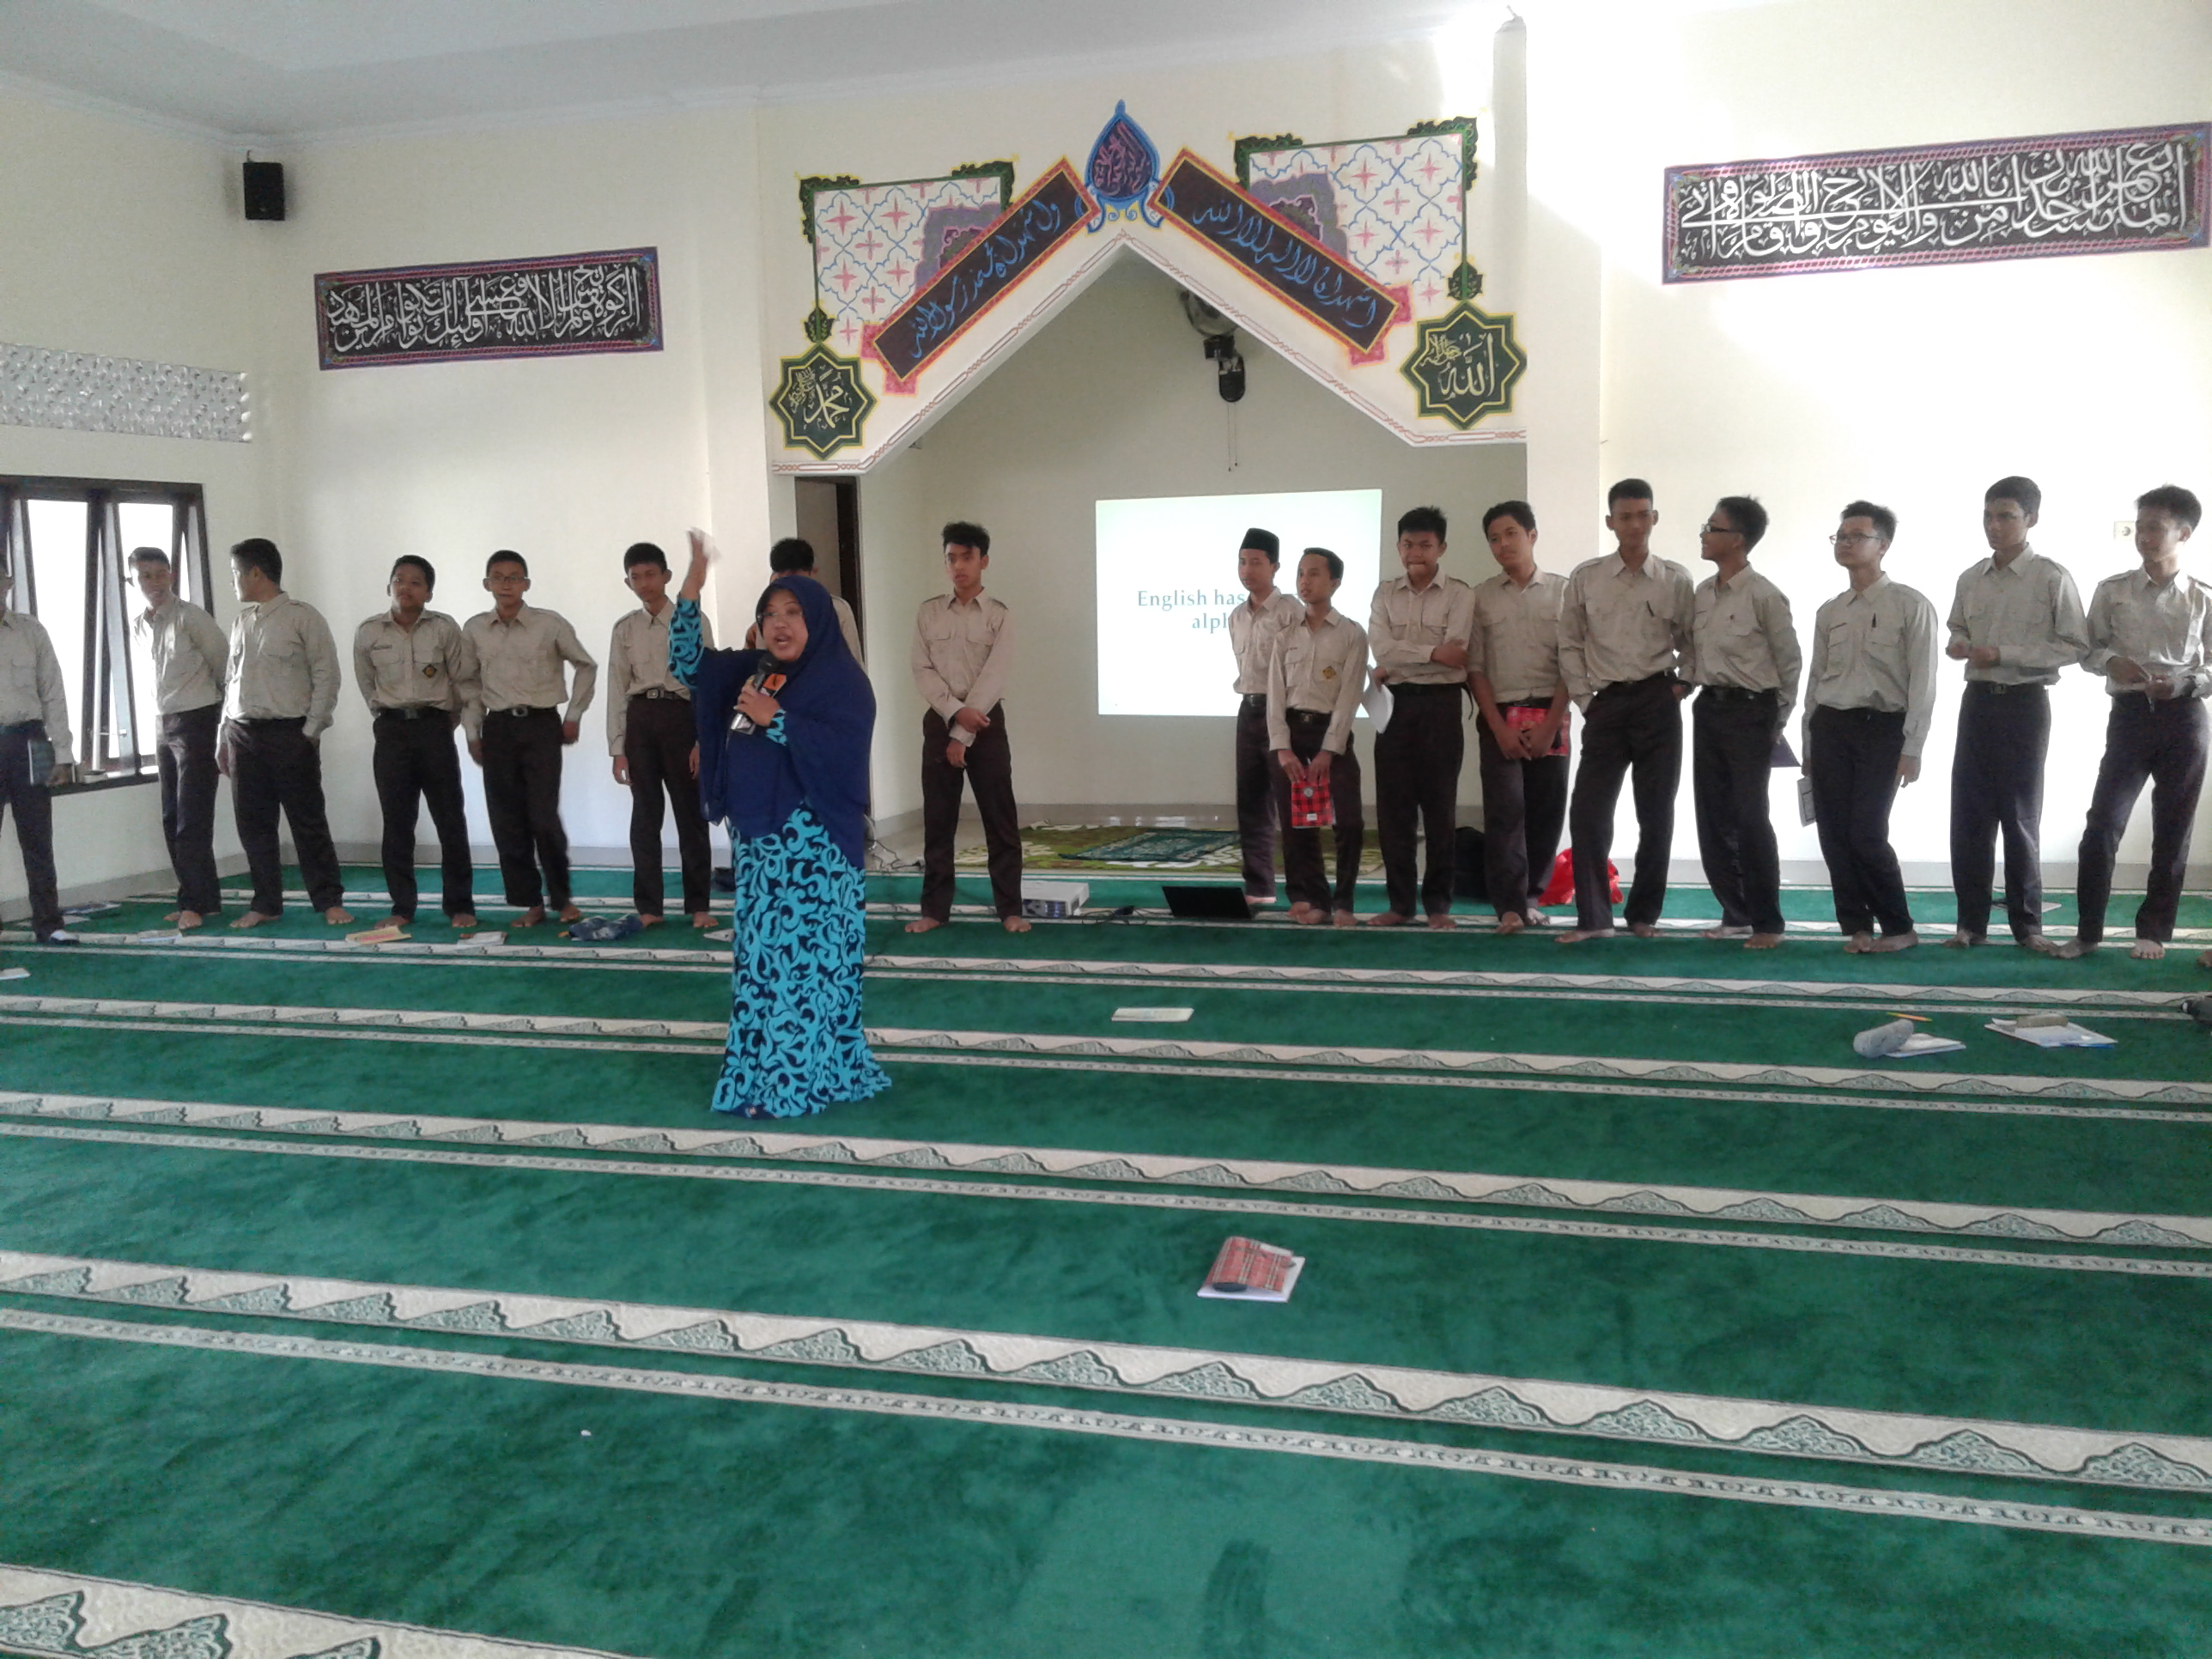 Siswa Baru Smait Abu Bakar Boarding School Kulon Progo Mengikuti Pelatihan Bahasa Inggris Sma It Abu Bakar Boarding School Kulon Progo